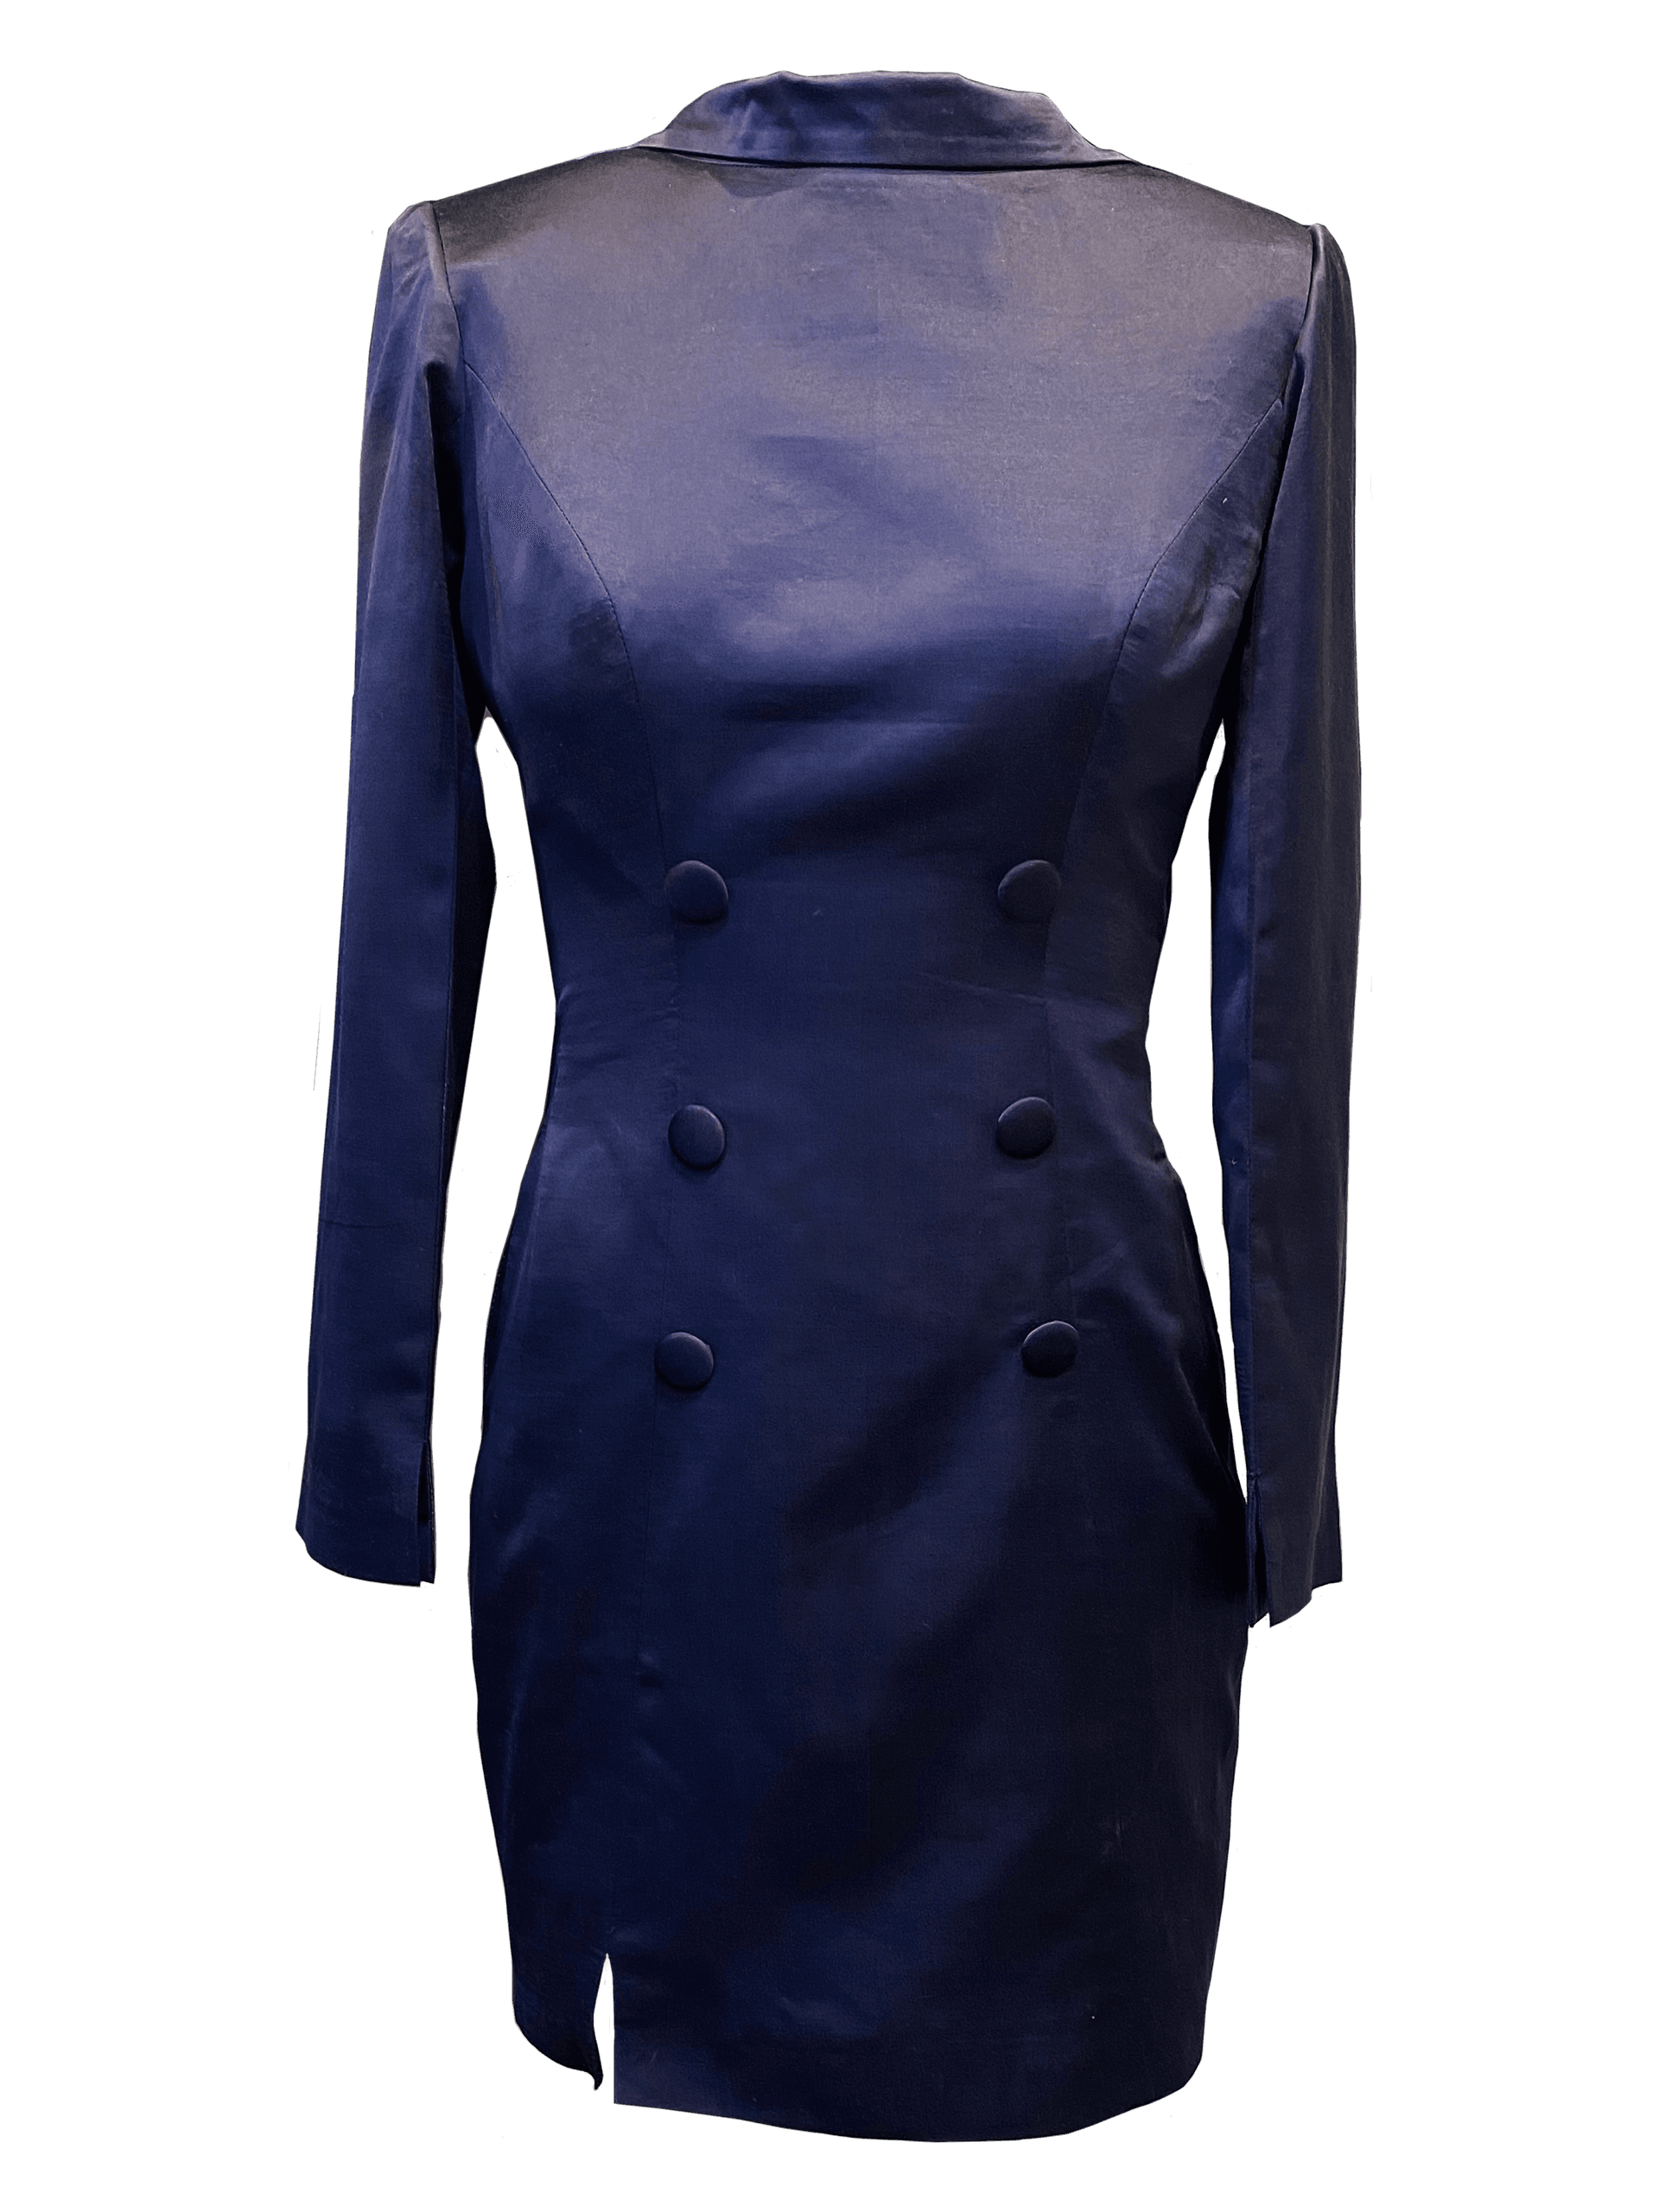 shivanii iconic blazer dress